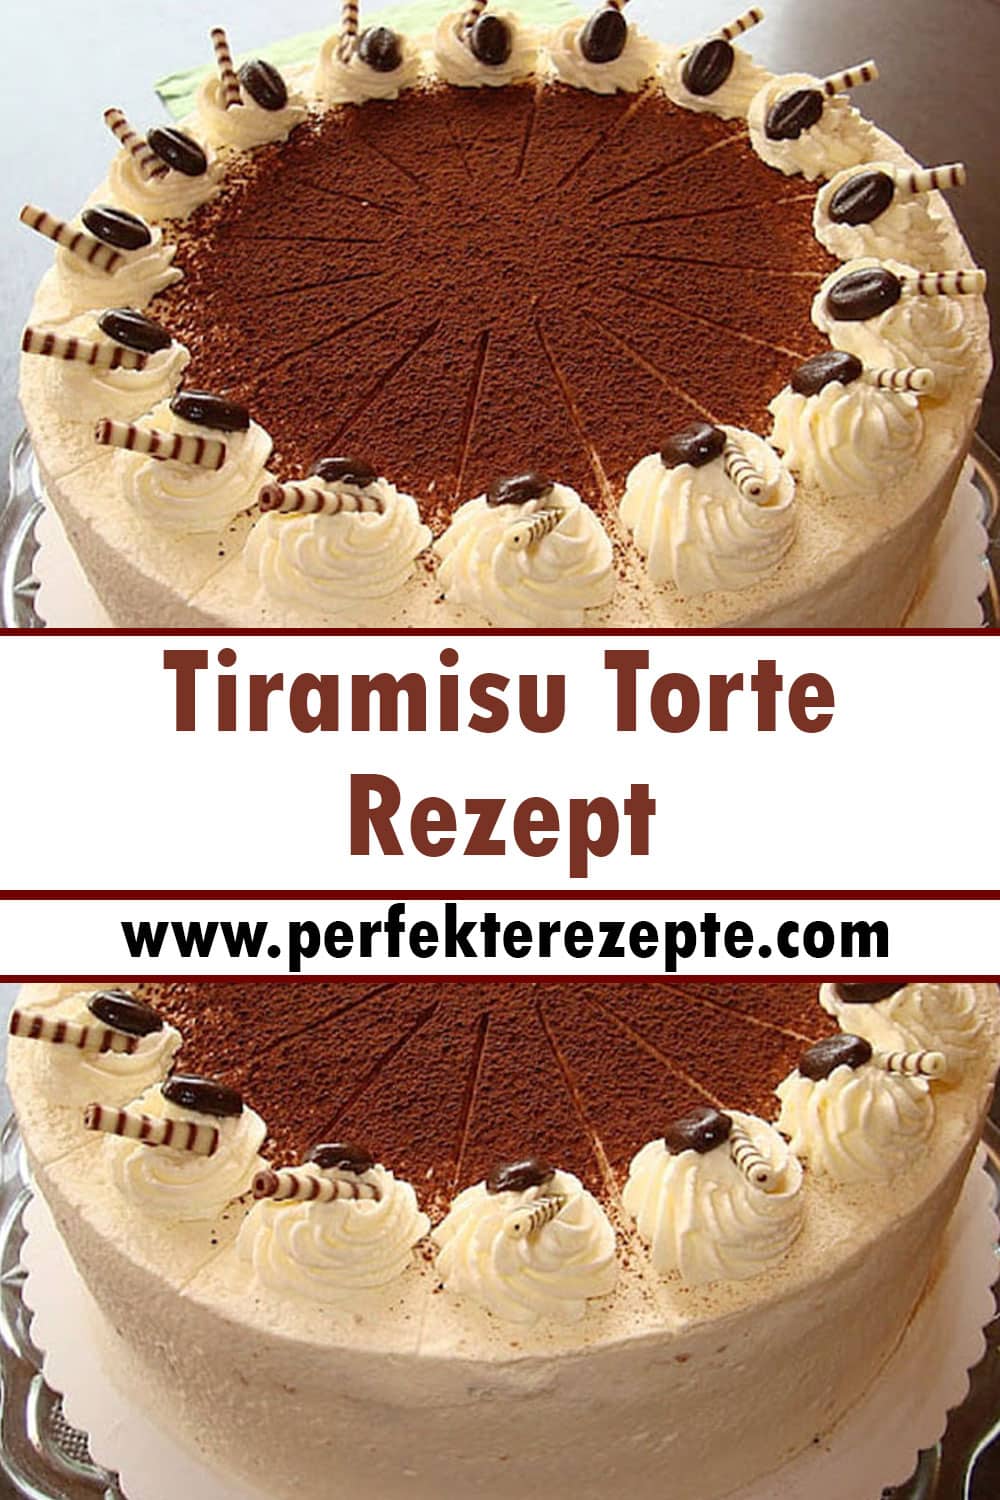 Tiramisu Torte Rezept